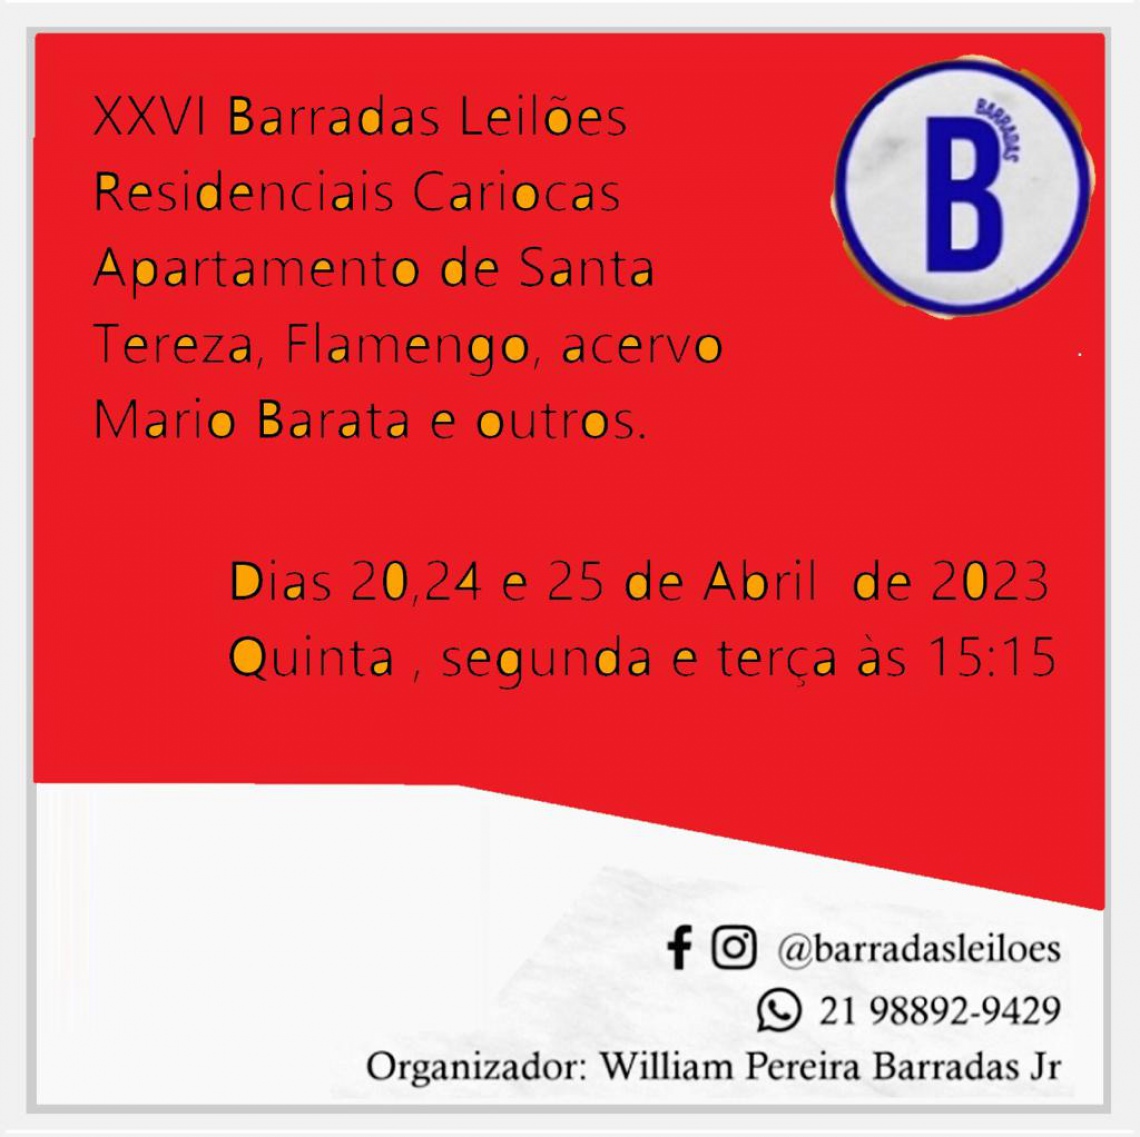 XXVI Barradas Leilões - Residenciais Cariocas - Apartamento de Santa Tereza, Flamengo e outros